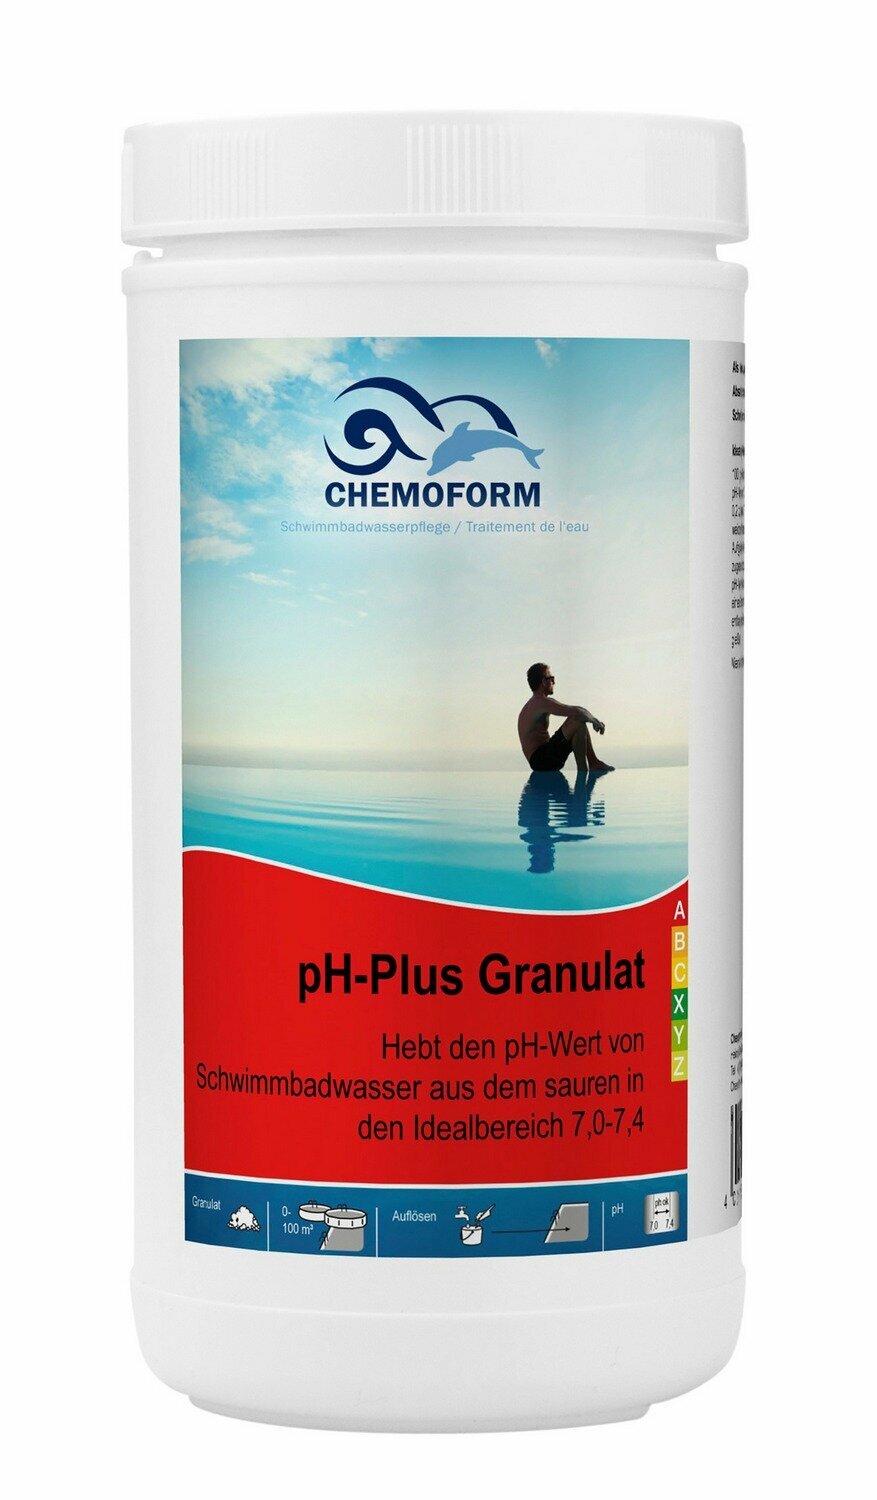 PH - Плюс гранулированный, CHEMOFORM, 1кг, Средство для повышения уровня pH в бассейне